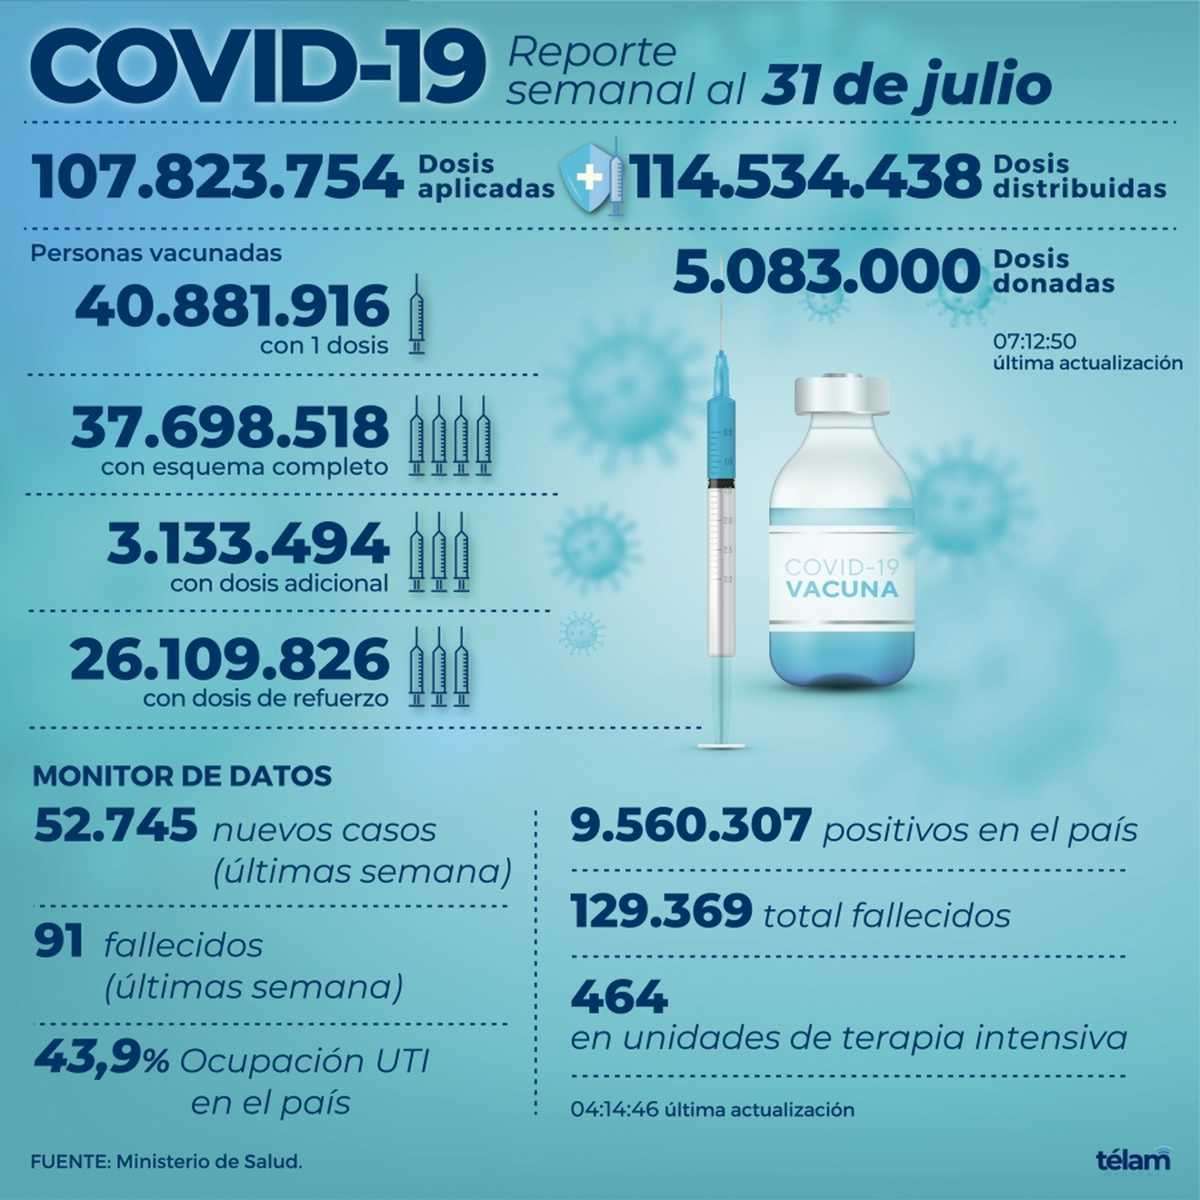 Hubo 52.745 contagios de coronavirus en 
el país, un 26% más que la semana pasada